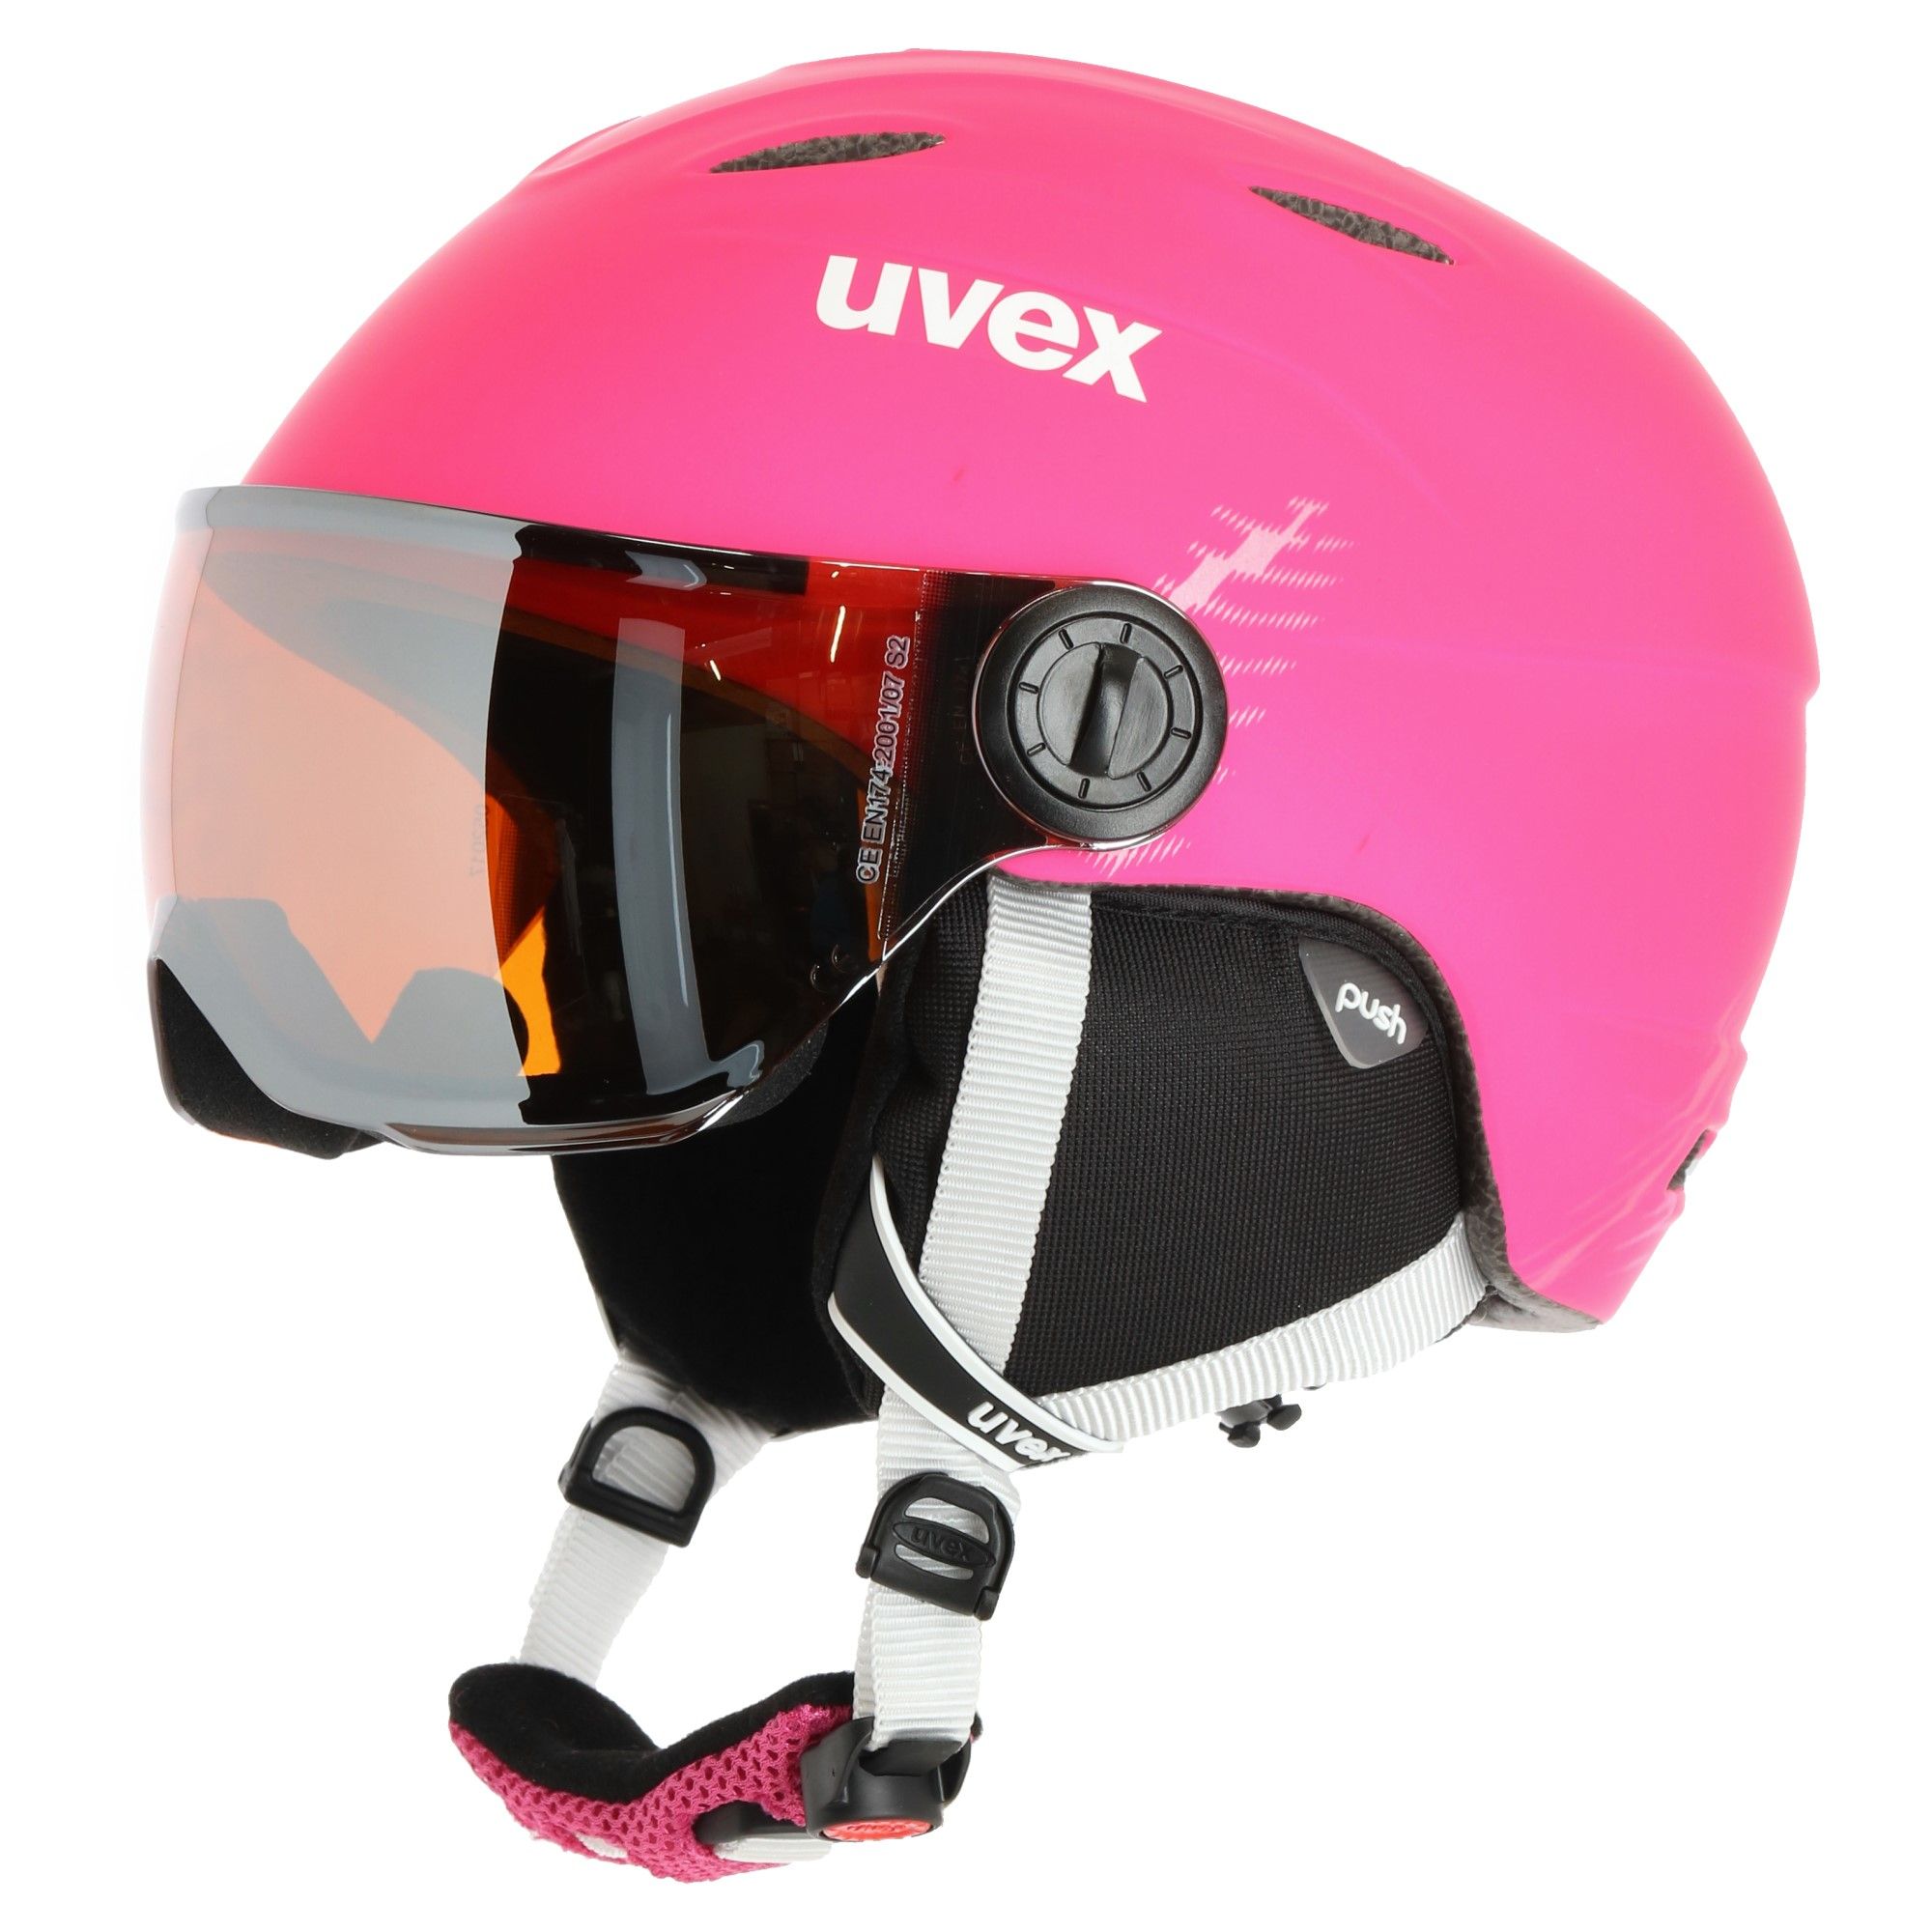 Uvex Junior Visor Pro Helmet or Junior size 54-56cm color pink - Goskand Ski & Soccer Store